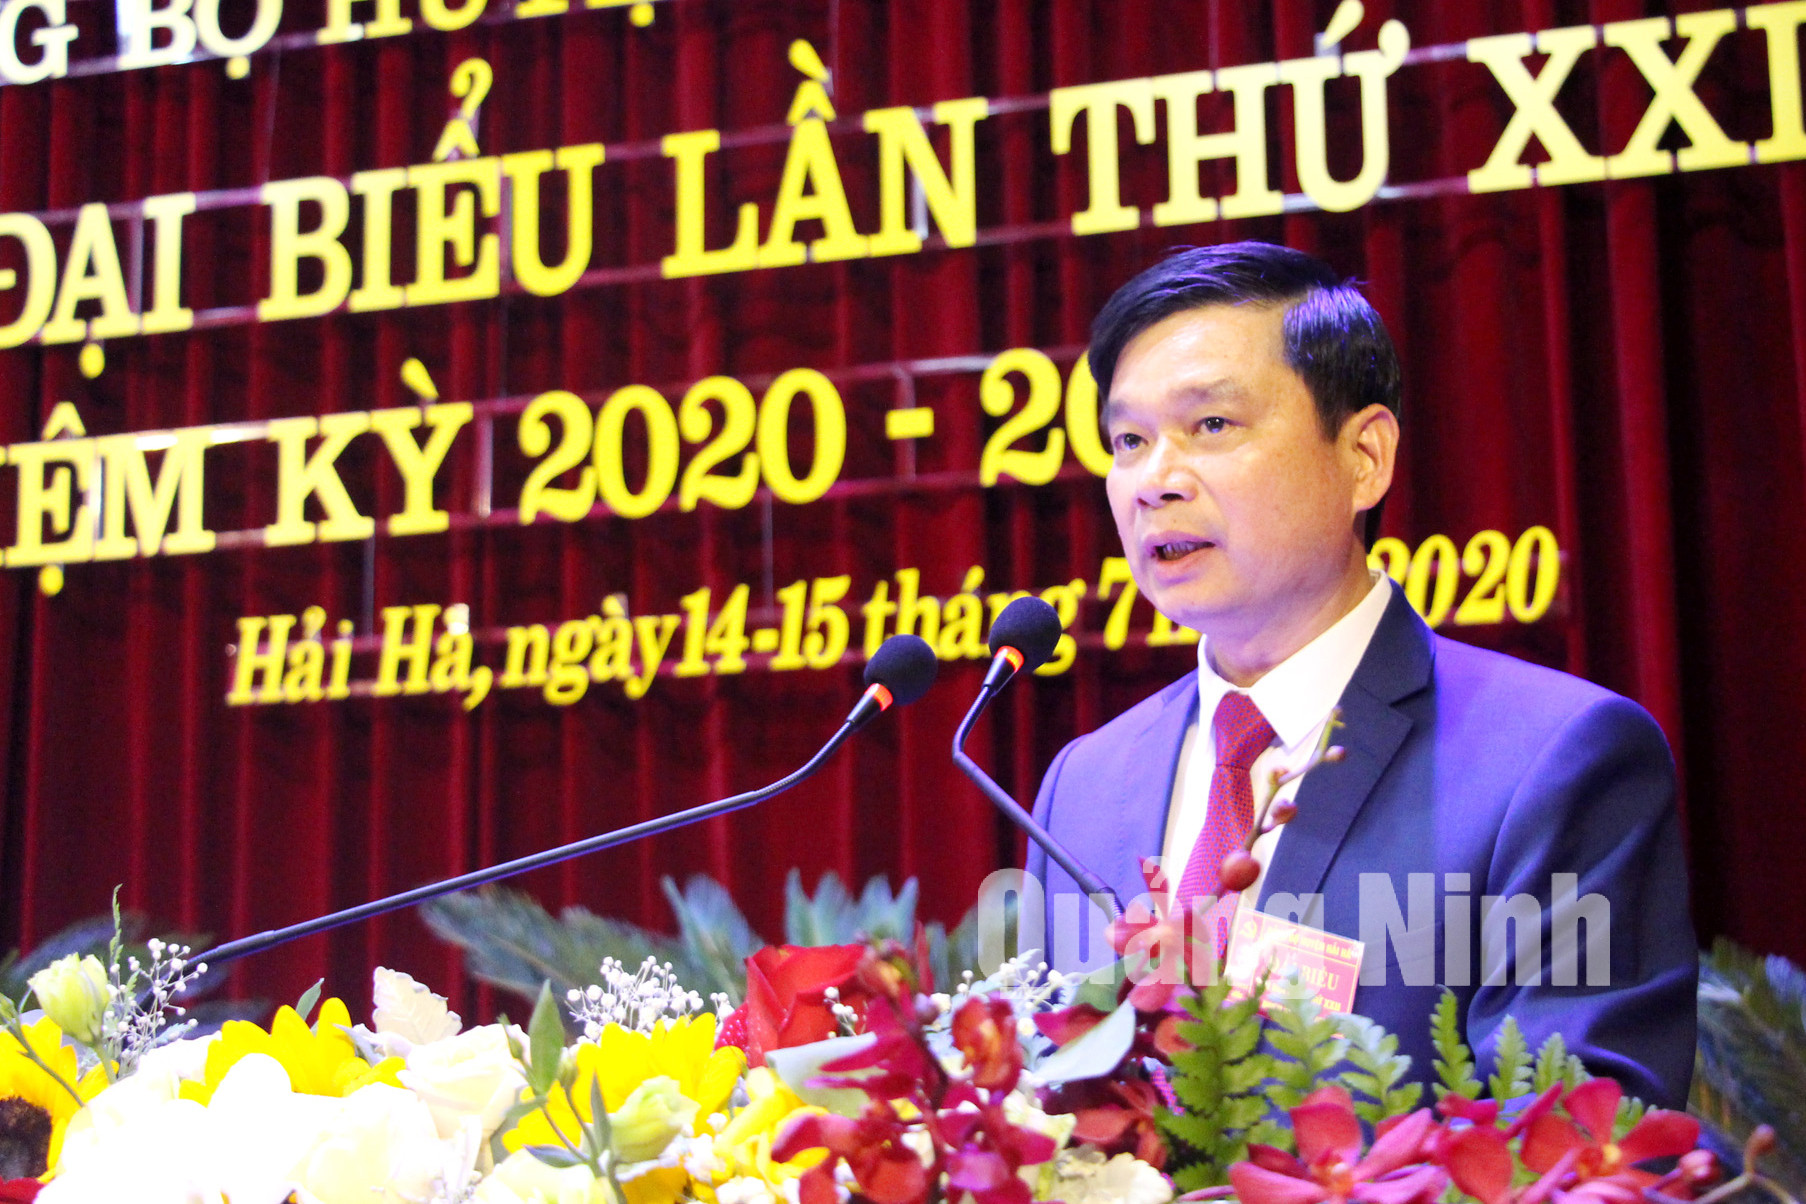 Đồng chí Phạm Xuân Đài, Bí thư Huyện ủy Hải Hà, trình bày báo cáo chính trị tại đại hội (7-2020). Ảnh: Thu Chung